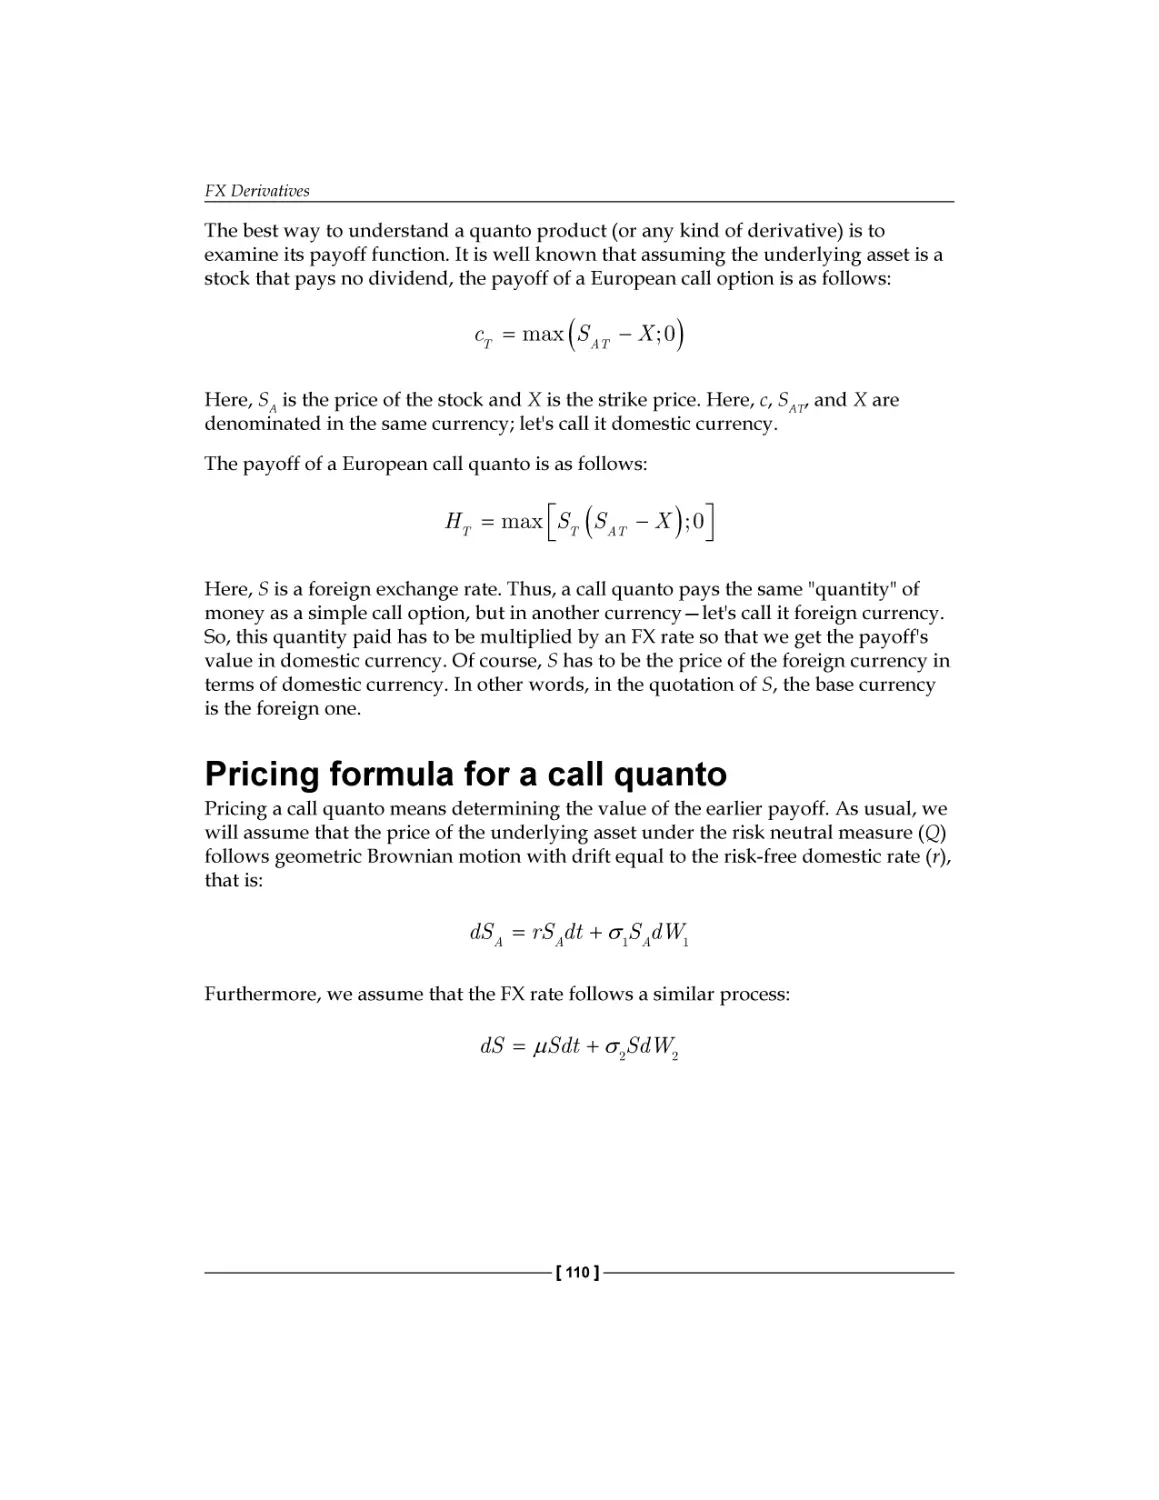 Pricing formula for call quanto